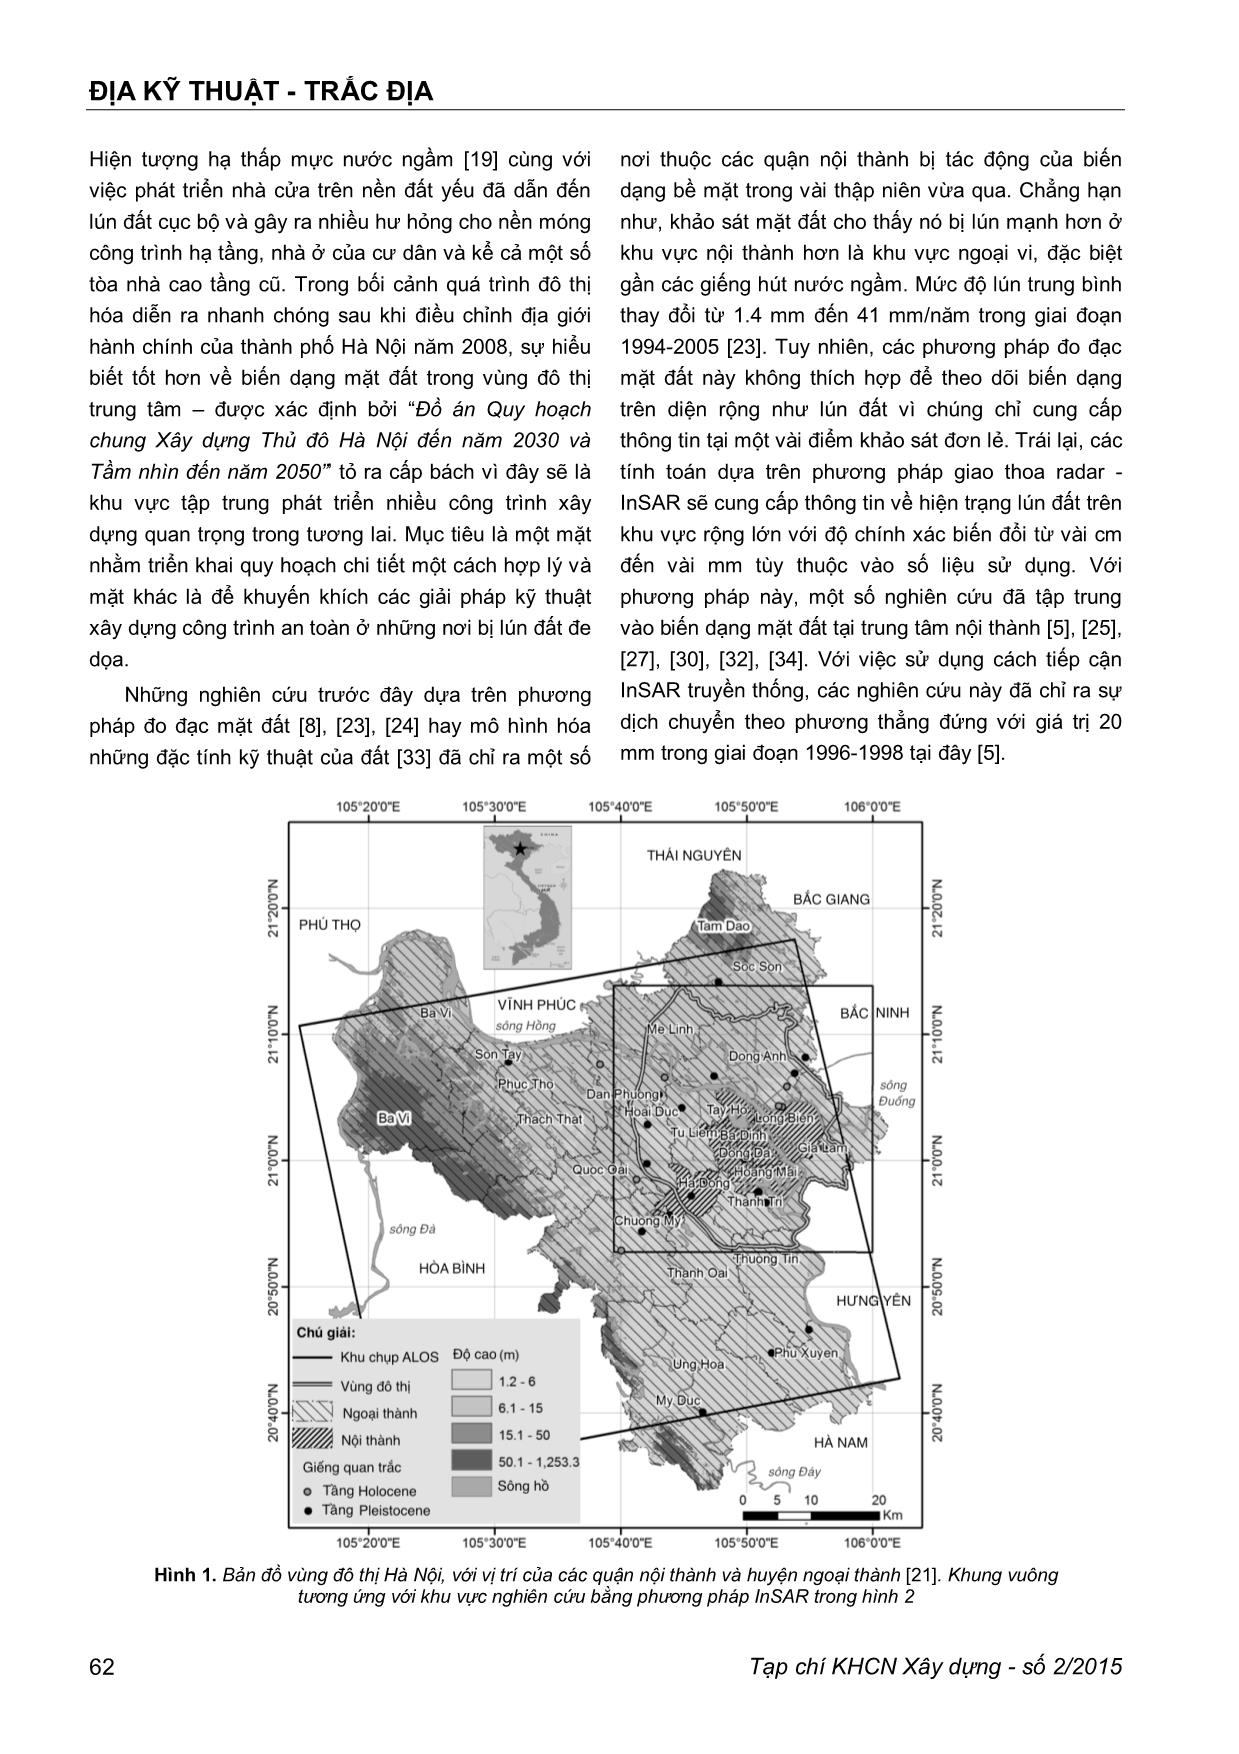 Áp dụng phương pháp giao thoa radar để xác định hiện tượng lún đất trong vùng đô thị trung tâm thành phố Hà Nội trang 2